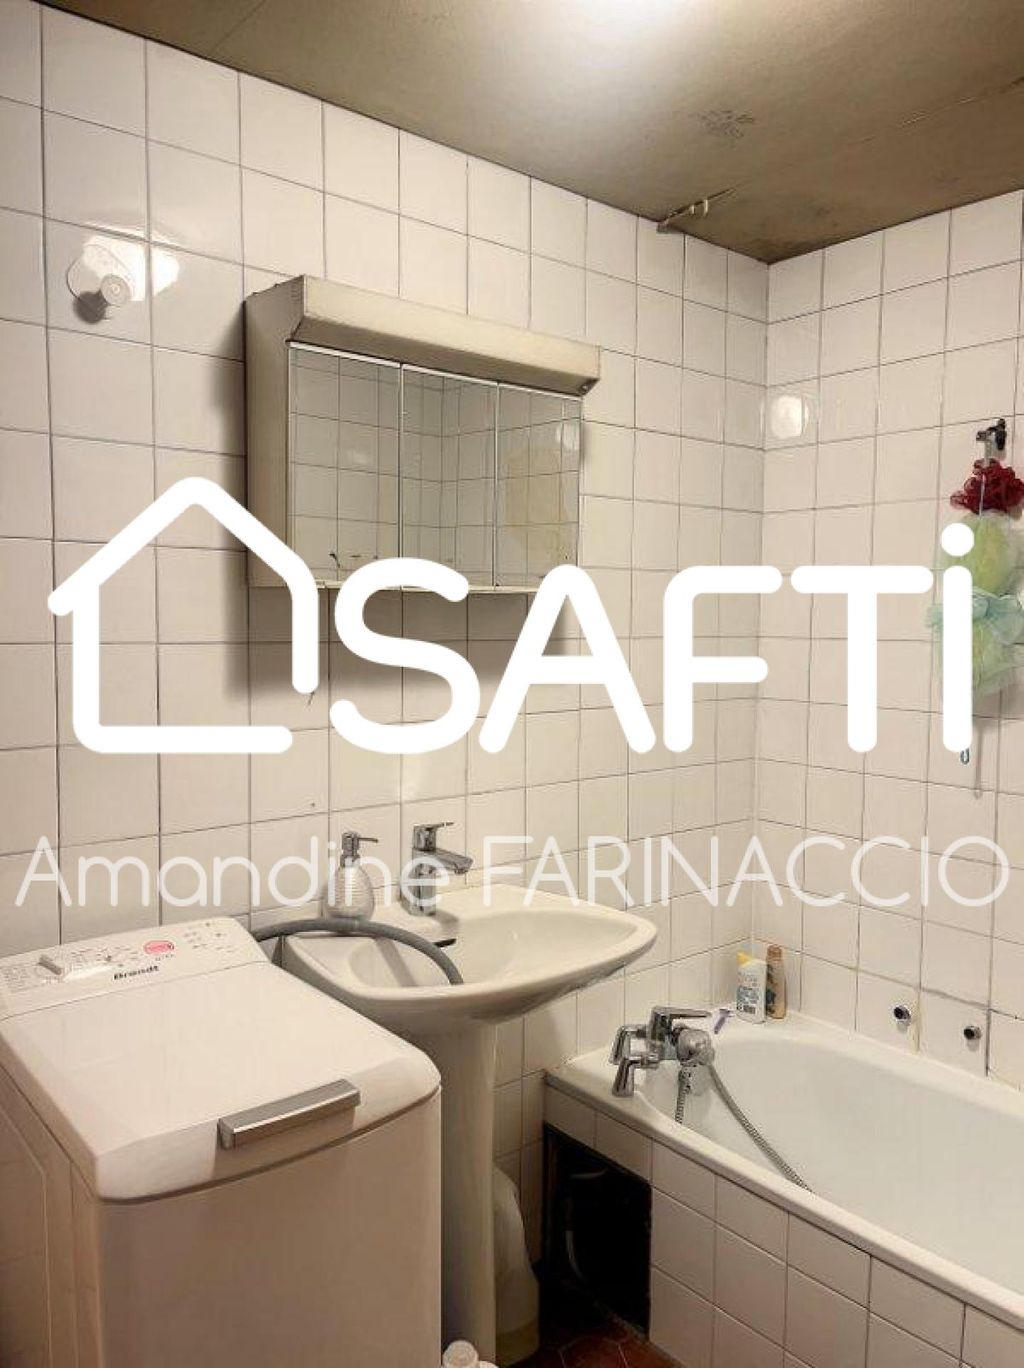 Achat appartement 1 pièce(s) Chamonix-Mont-Blanc